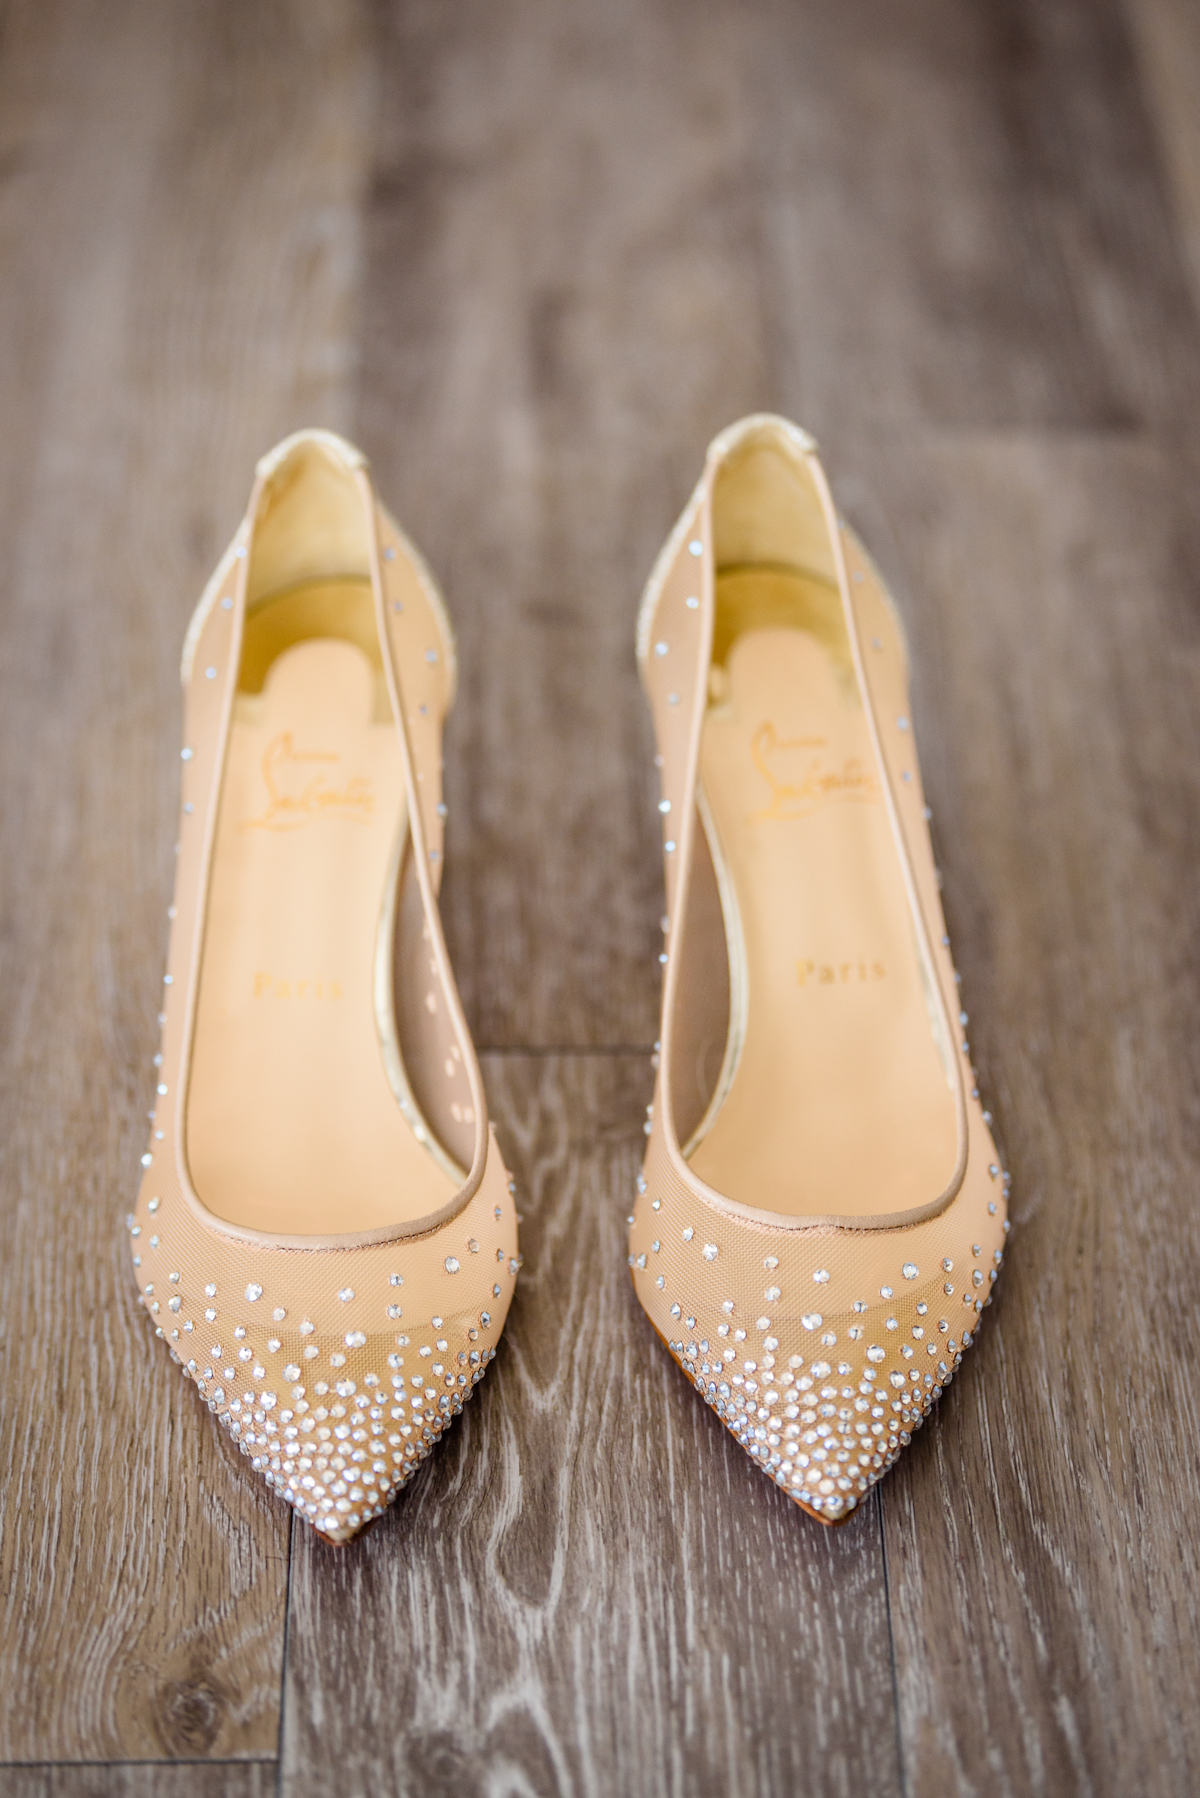 Weylin Wedding: Christian Louboutin wedding shoes